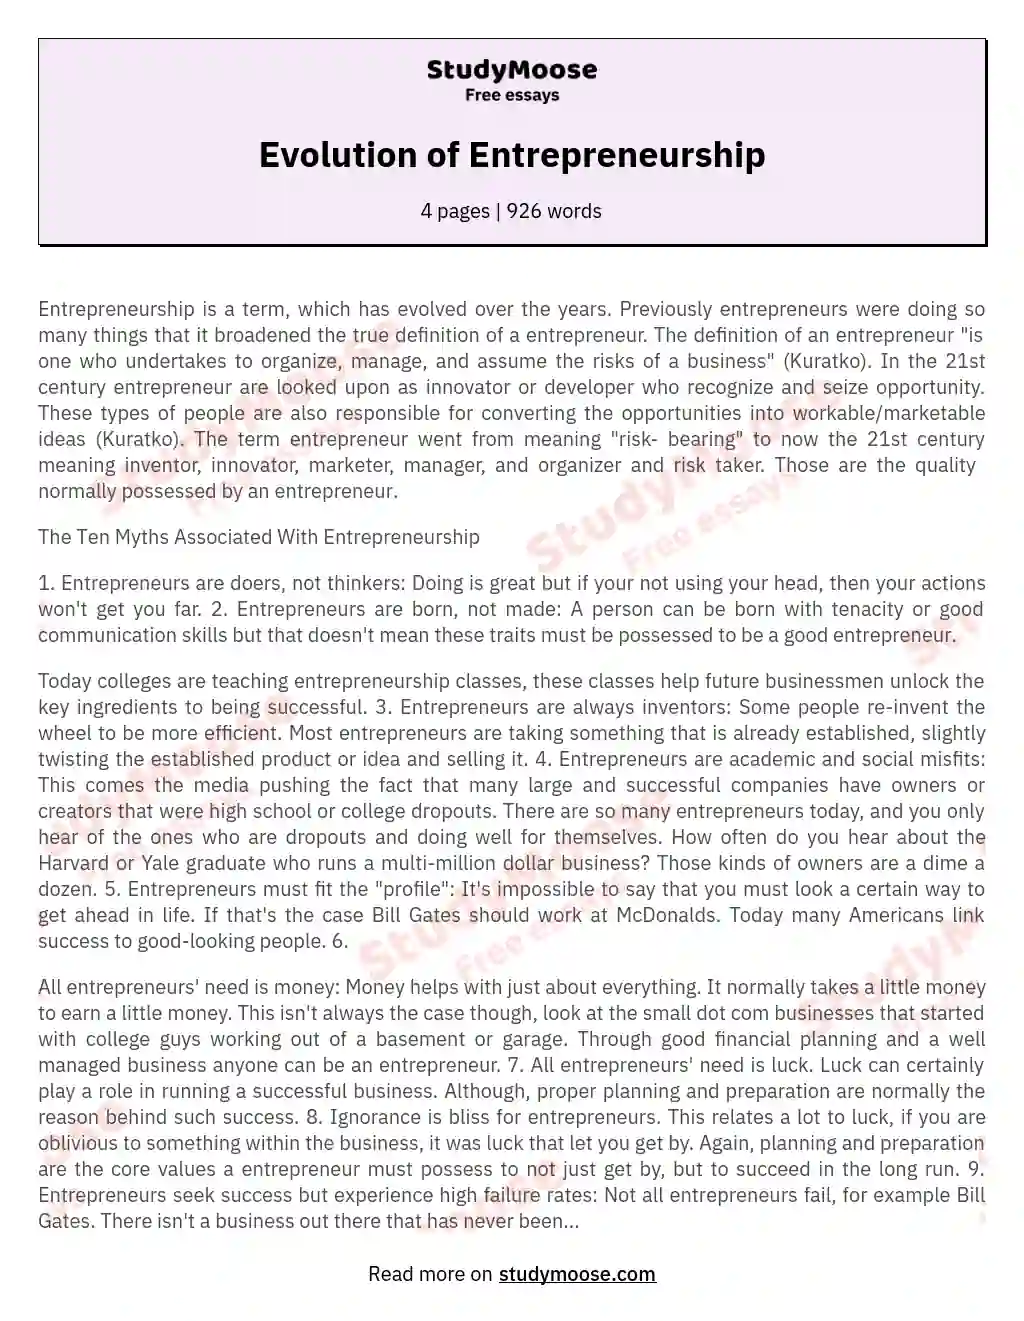 Evolution of Entrepreneurship essay